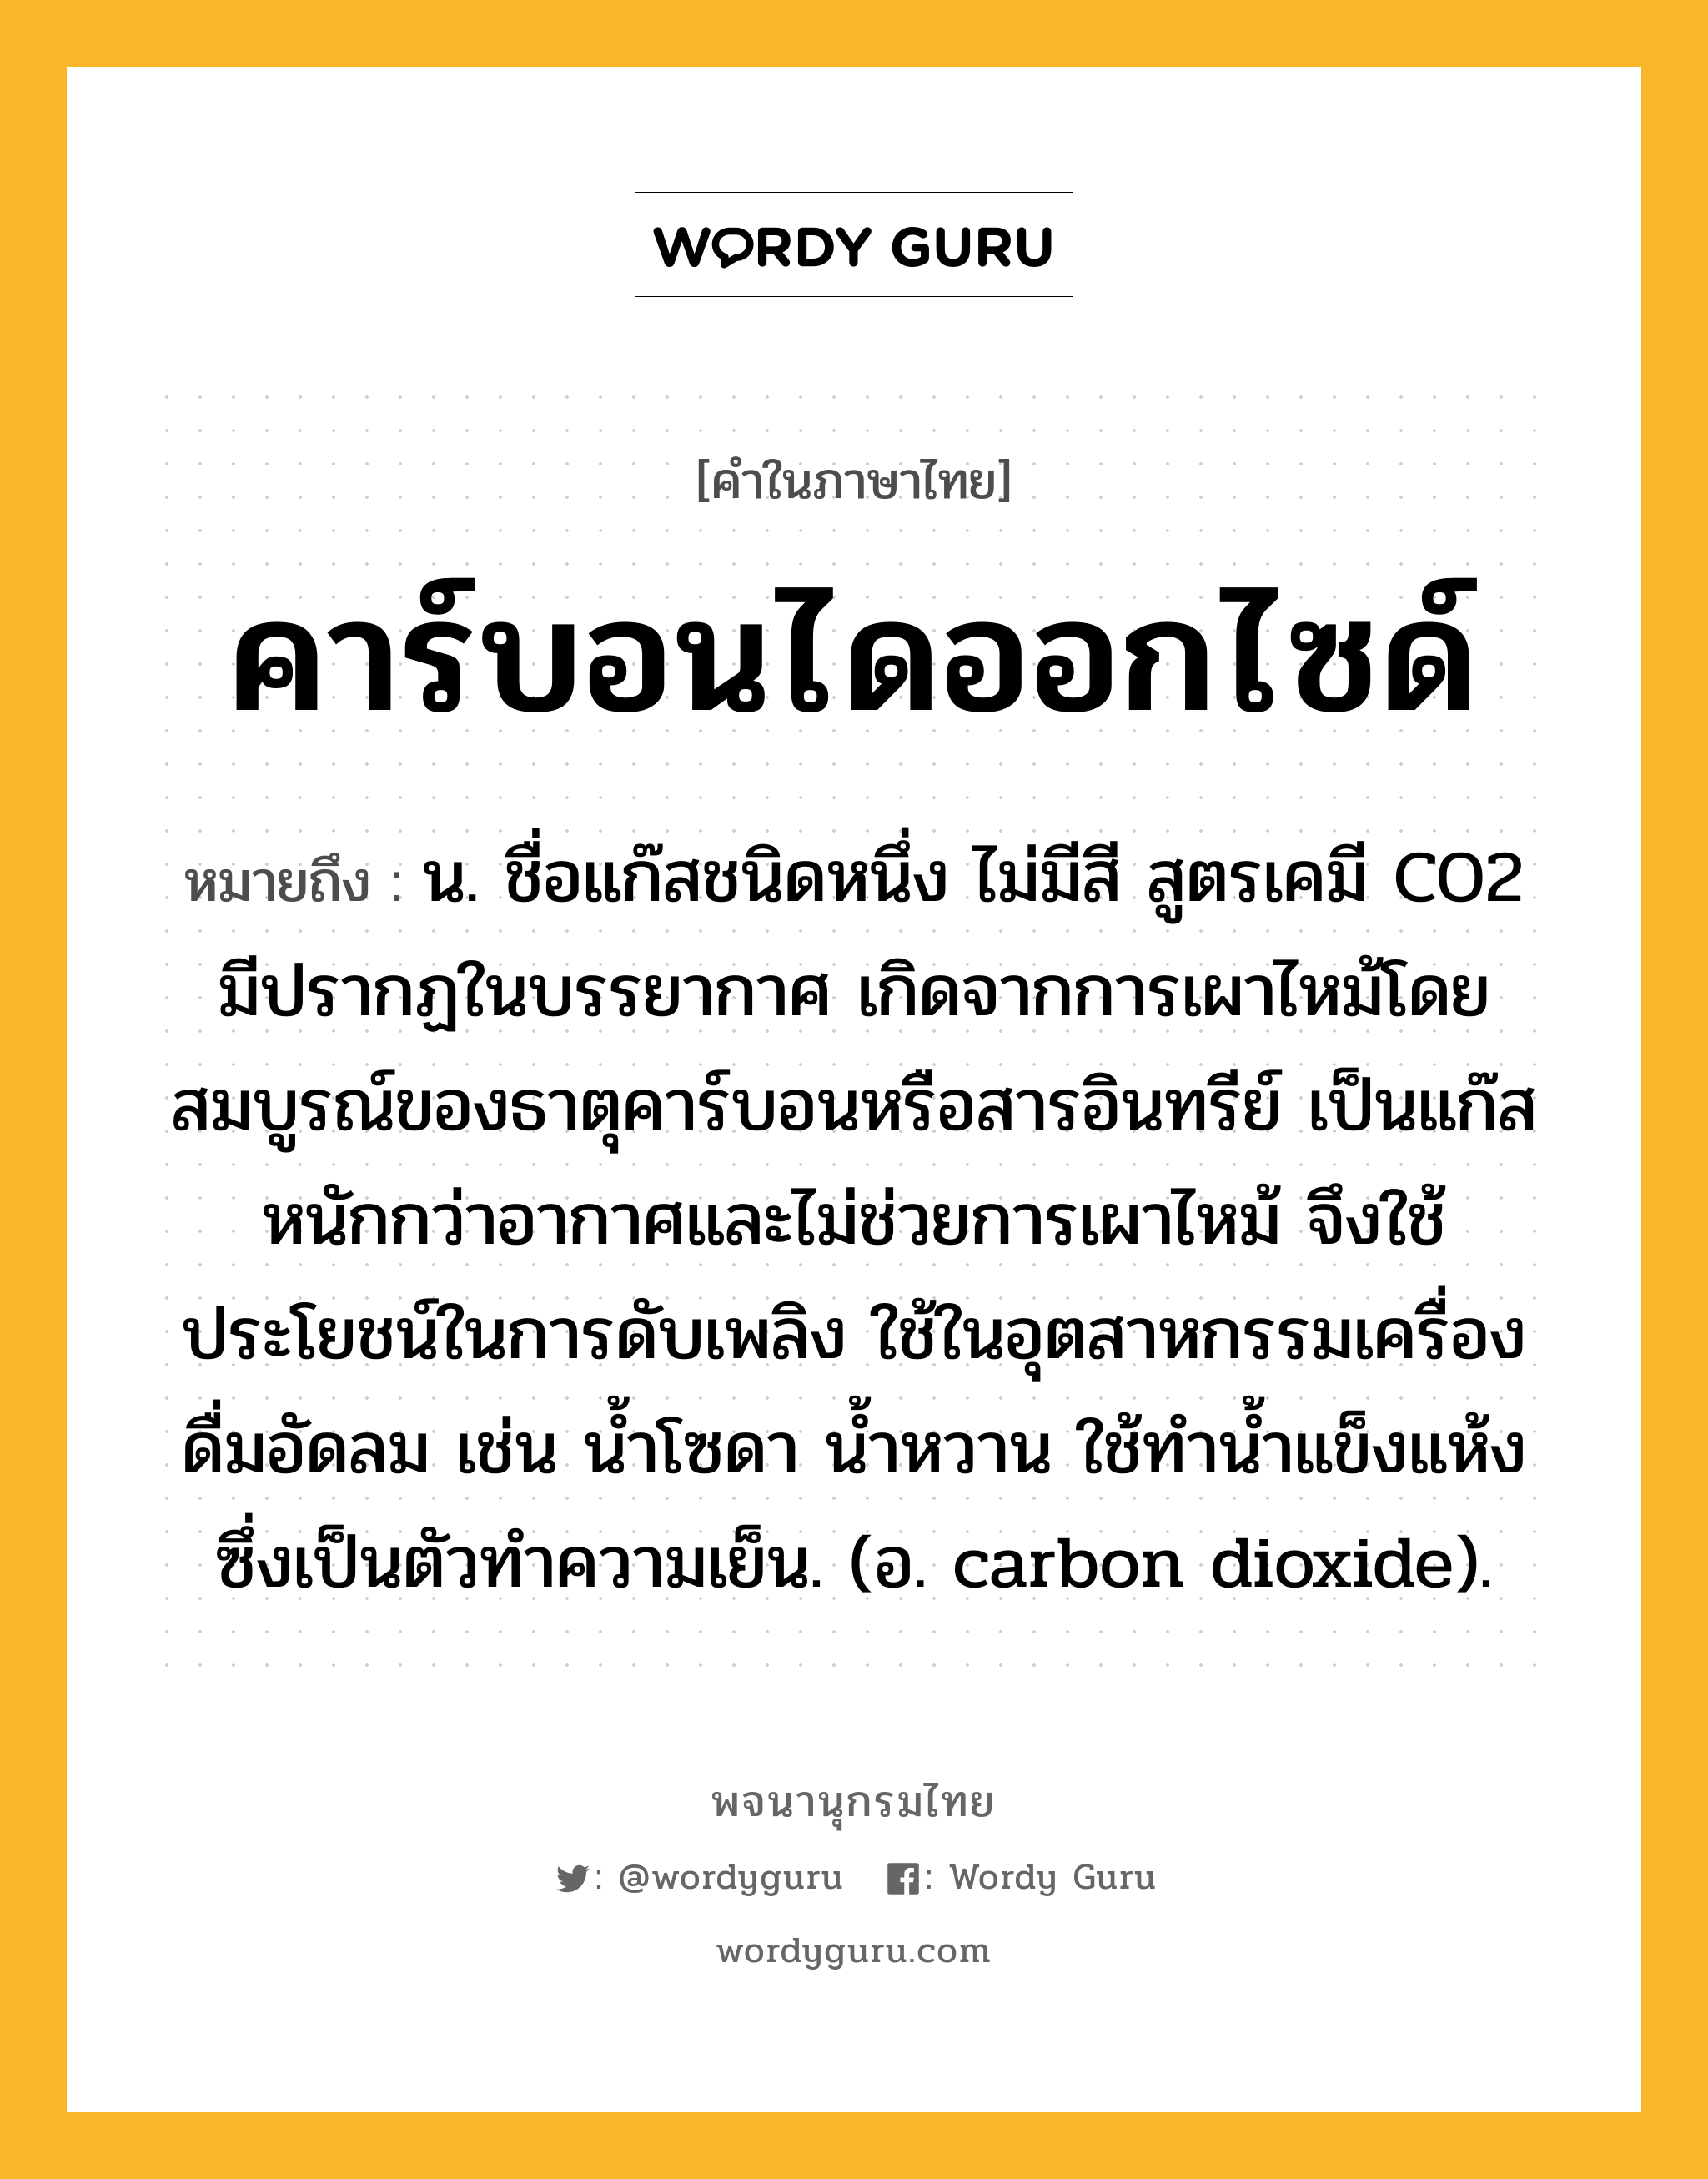 คาร์บอนไดออกไซด์ หมายถึงอะไร?, คำในภาษาไทย คาร์บอนไดออกไซด์ หมายถึง น. ชื่อแก๊สชนิดหนึ่ง ไม่มีสี สูตรเคมี CO2 มีปรากฏในบรรยากาศ เกิดจากการเผาไหม้โดยสมบูรณ์ของธาตุคาร์บอนหรือสารอินทรีย์ เป็นแก๊สหนักกว่าอากาศและไม่ช่วยการเผาไหม้ จึงใช้ประโยชน์ในการดับเพลิง ใช้ในอุตสาหกรรมเครื่องดื่มอัดลม เช่น นํ้าโซดา นํ้าหวาน ใช้ทํานํ้าแข็งแห้ง ซึ่งเป็นตัวทําความเย็น. (อ. carbon dioxide).